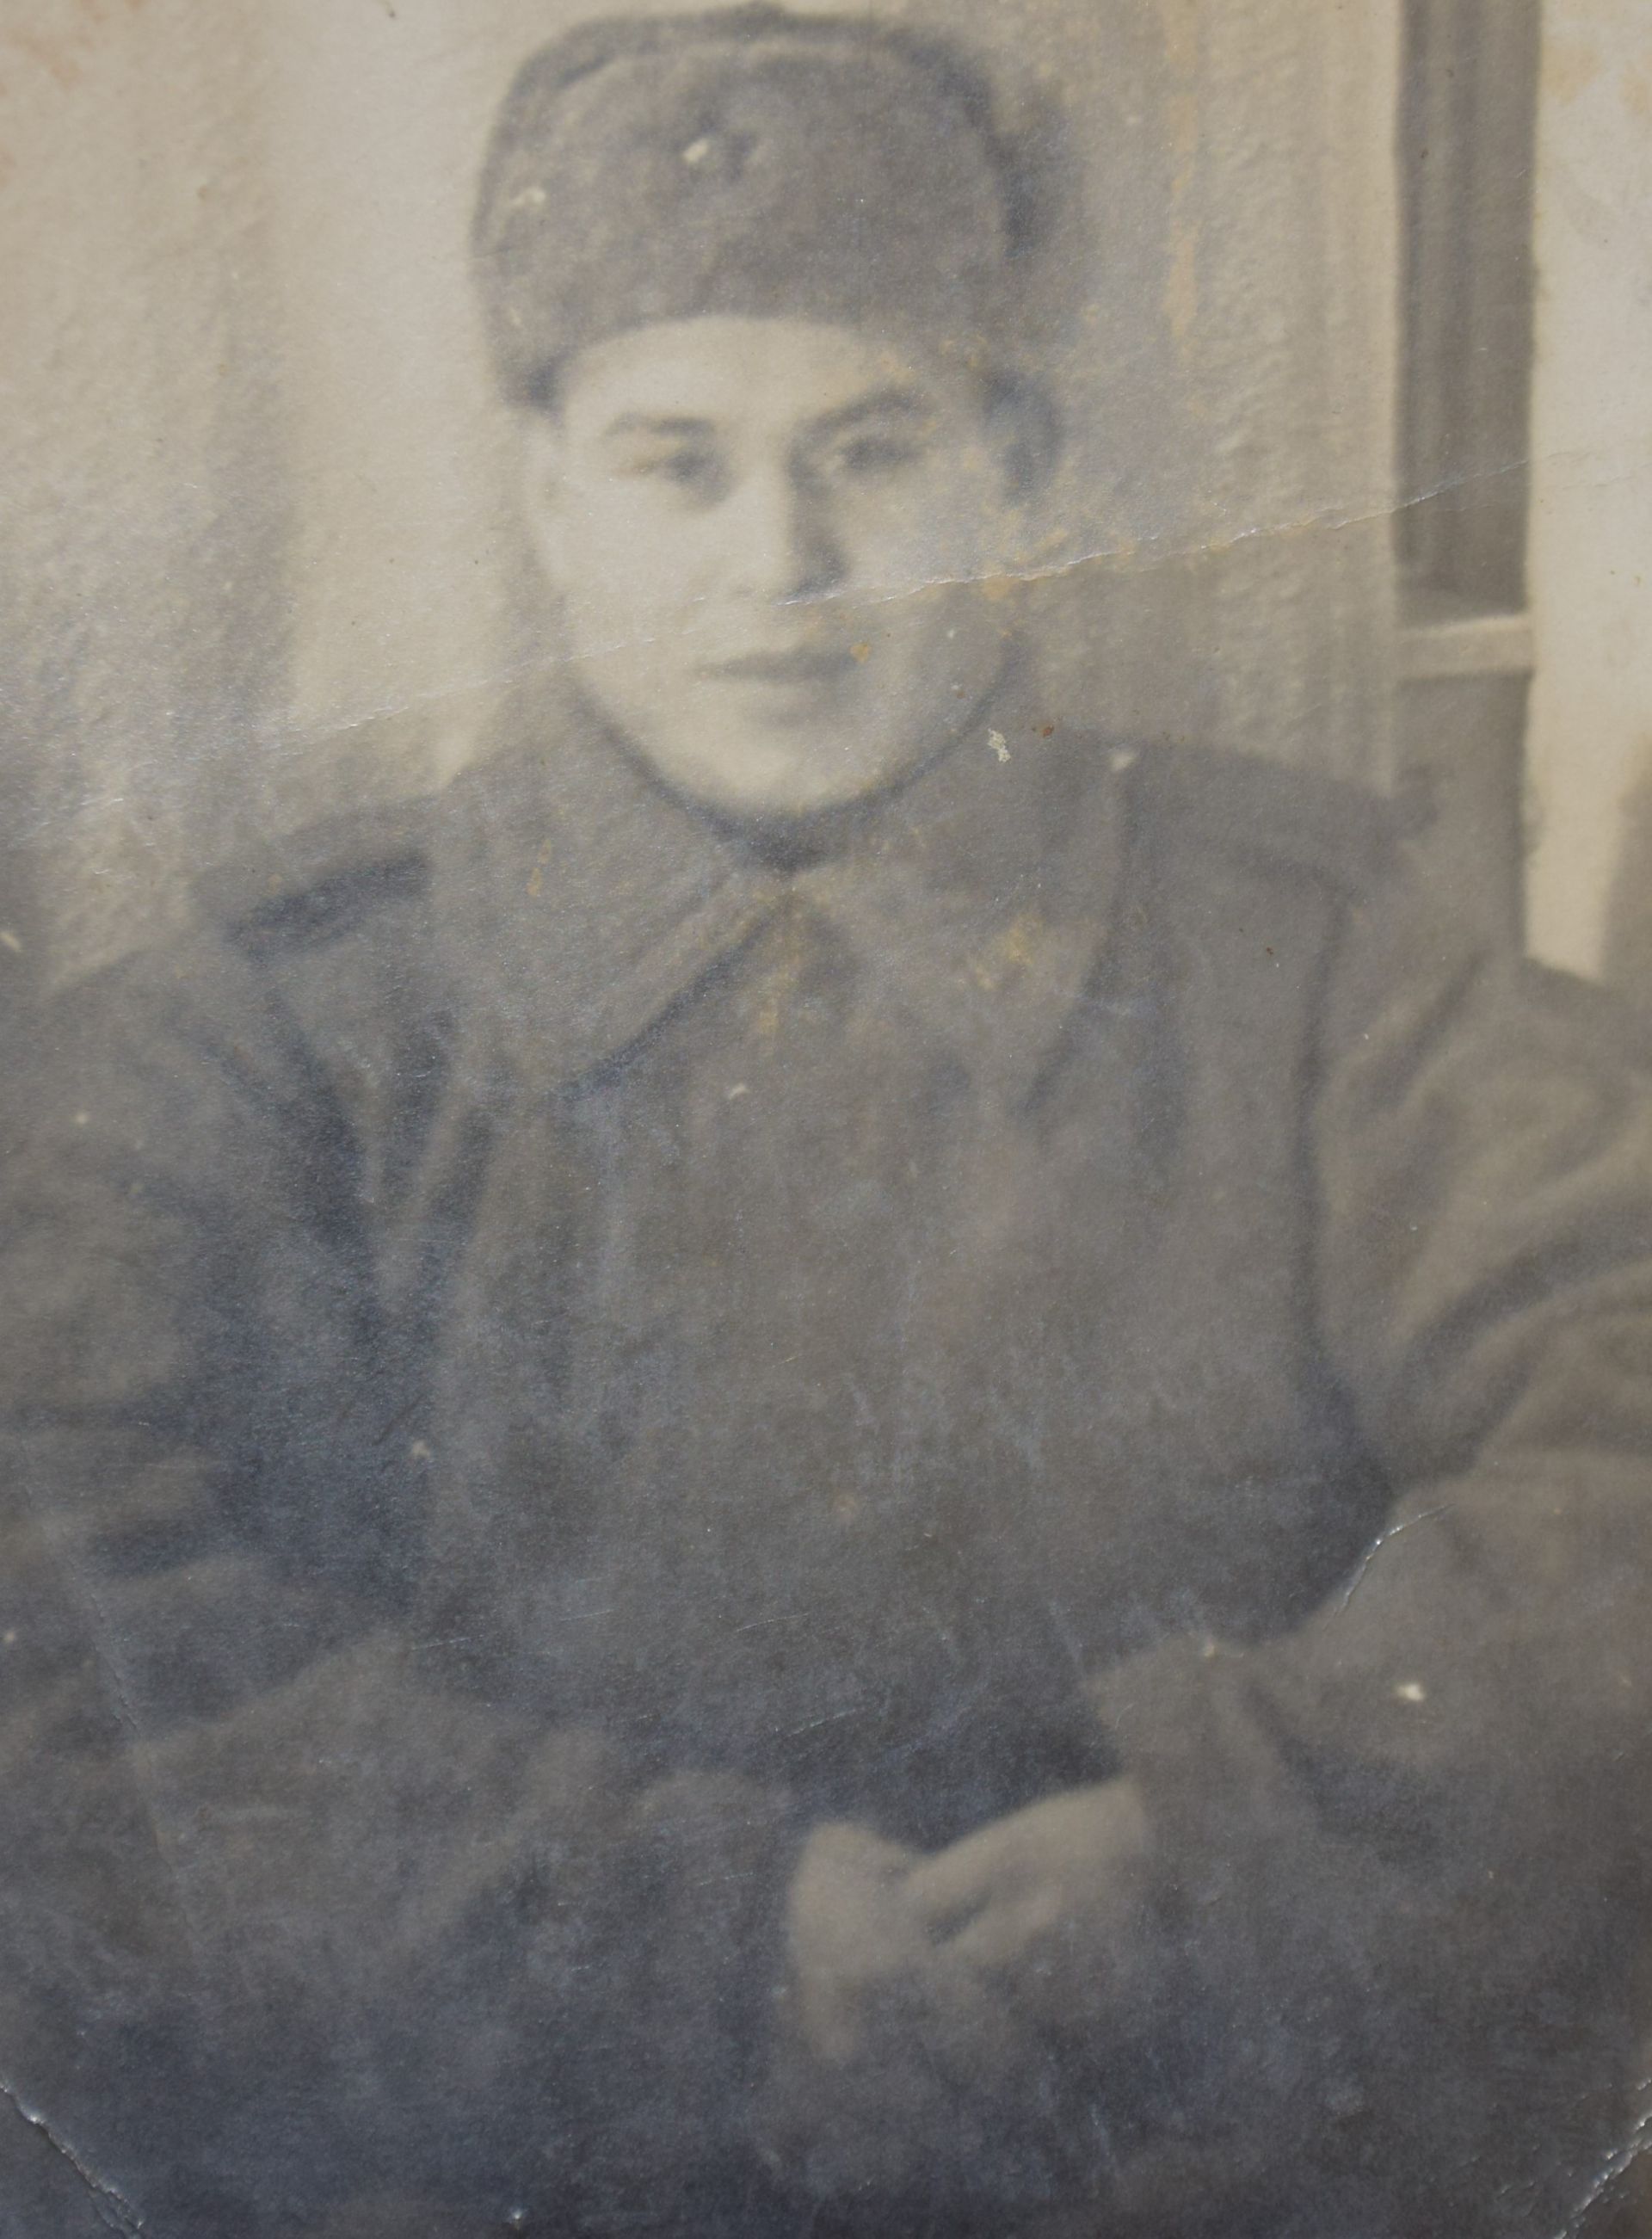 Участнику войны Вазыху Романовичу Киямову из Нурлата исполнилось 100 лет